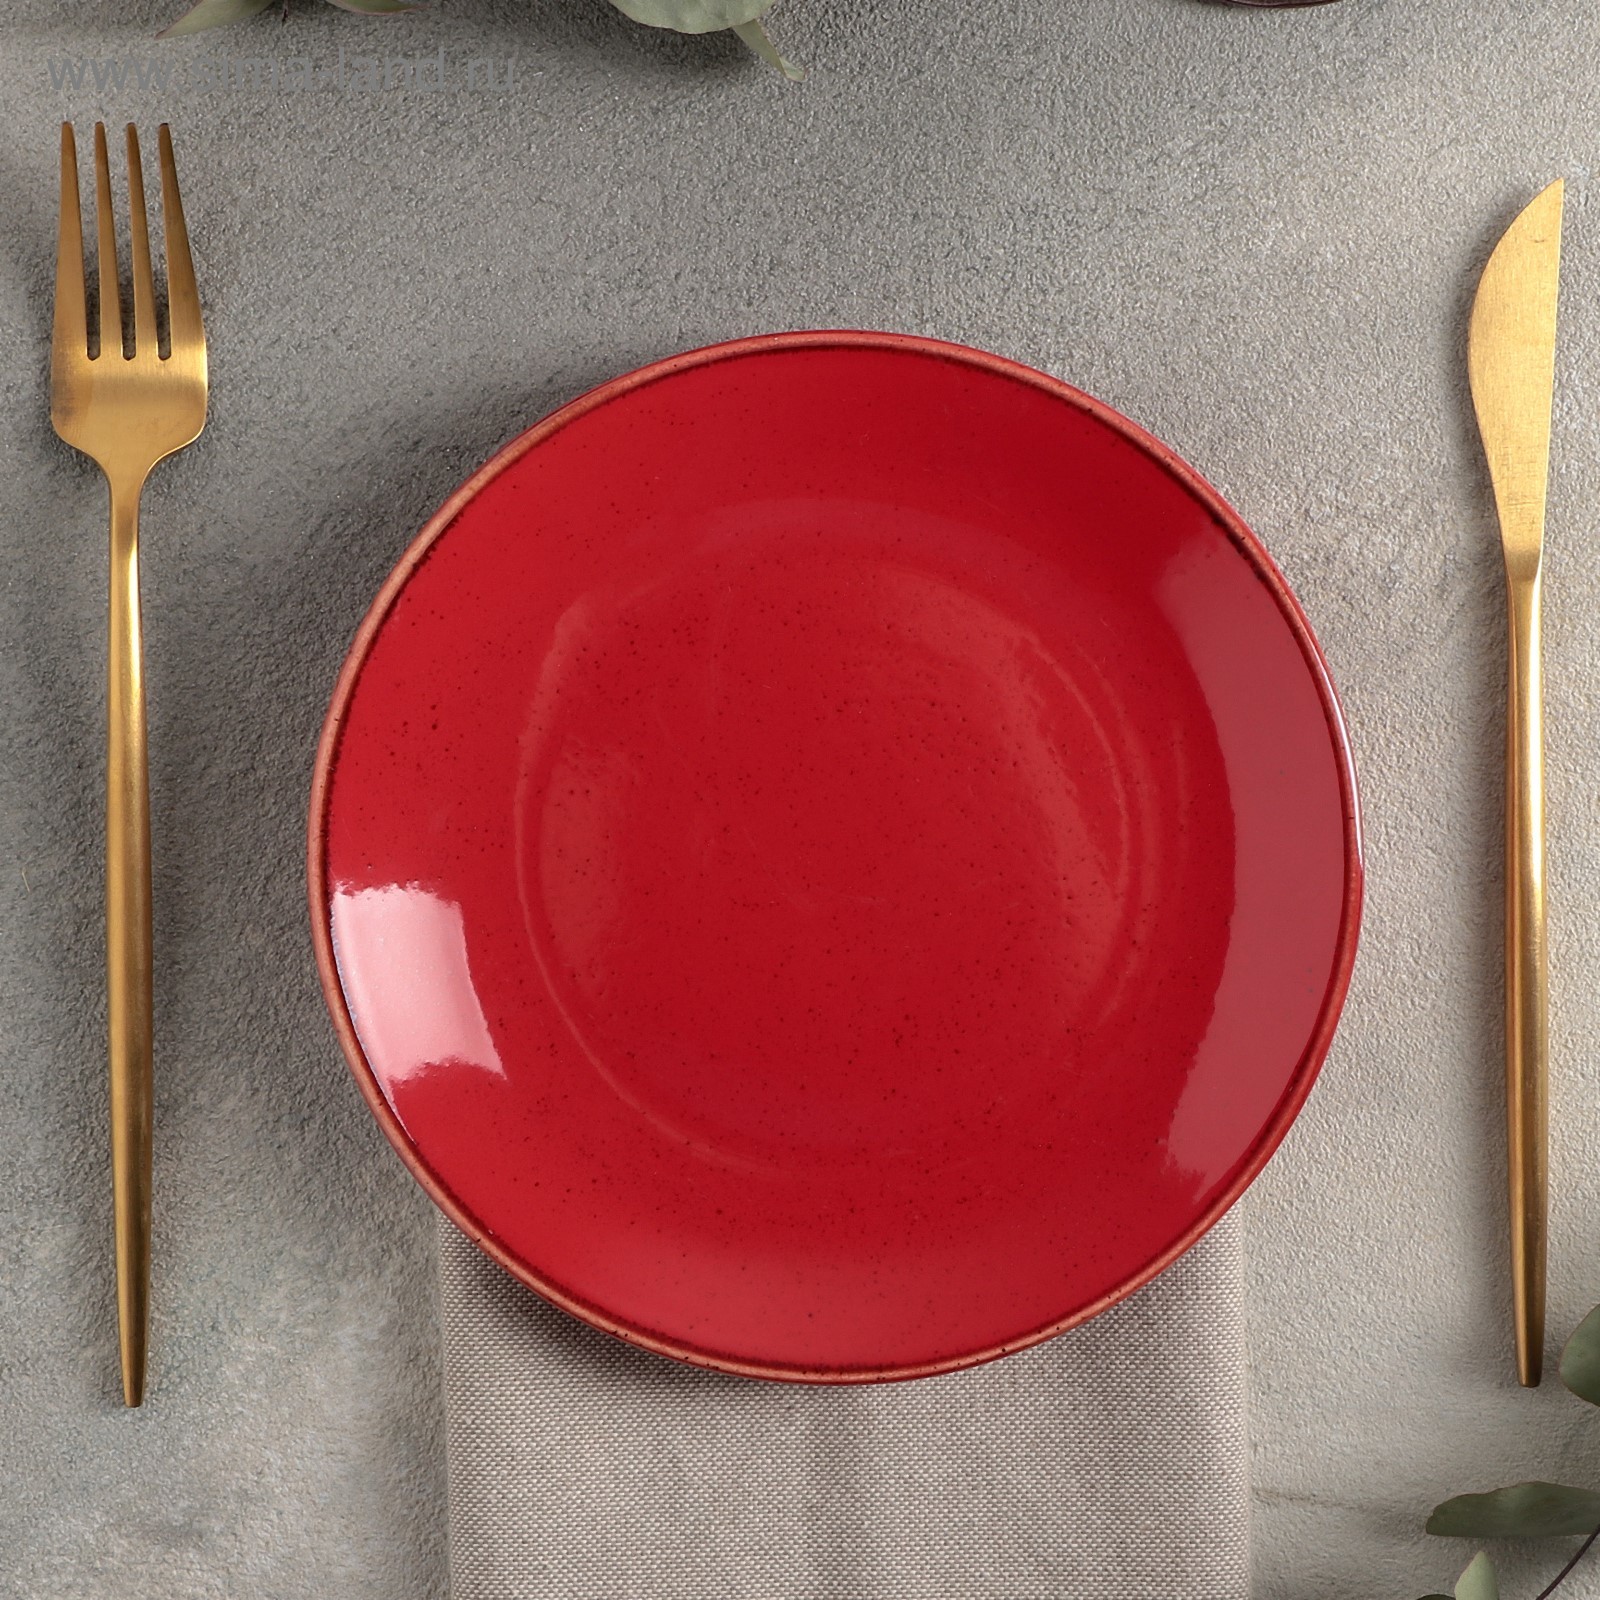 Тарелки красного цвета. Красная тарелка. Красные тарелки для сервировки. Плоская красная тарелка. Красная керамическая тарелка.